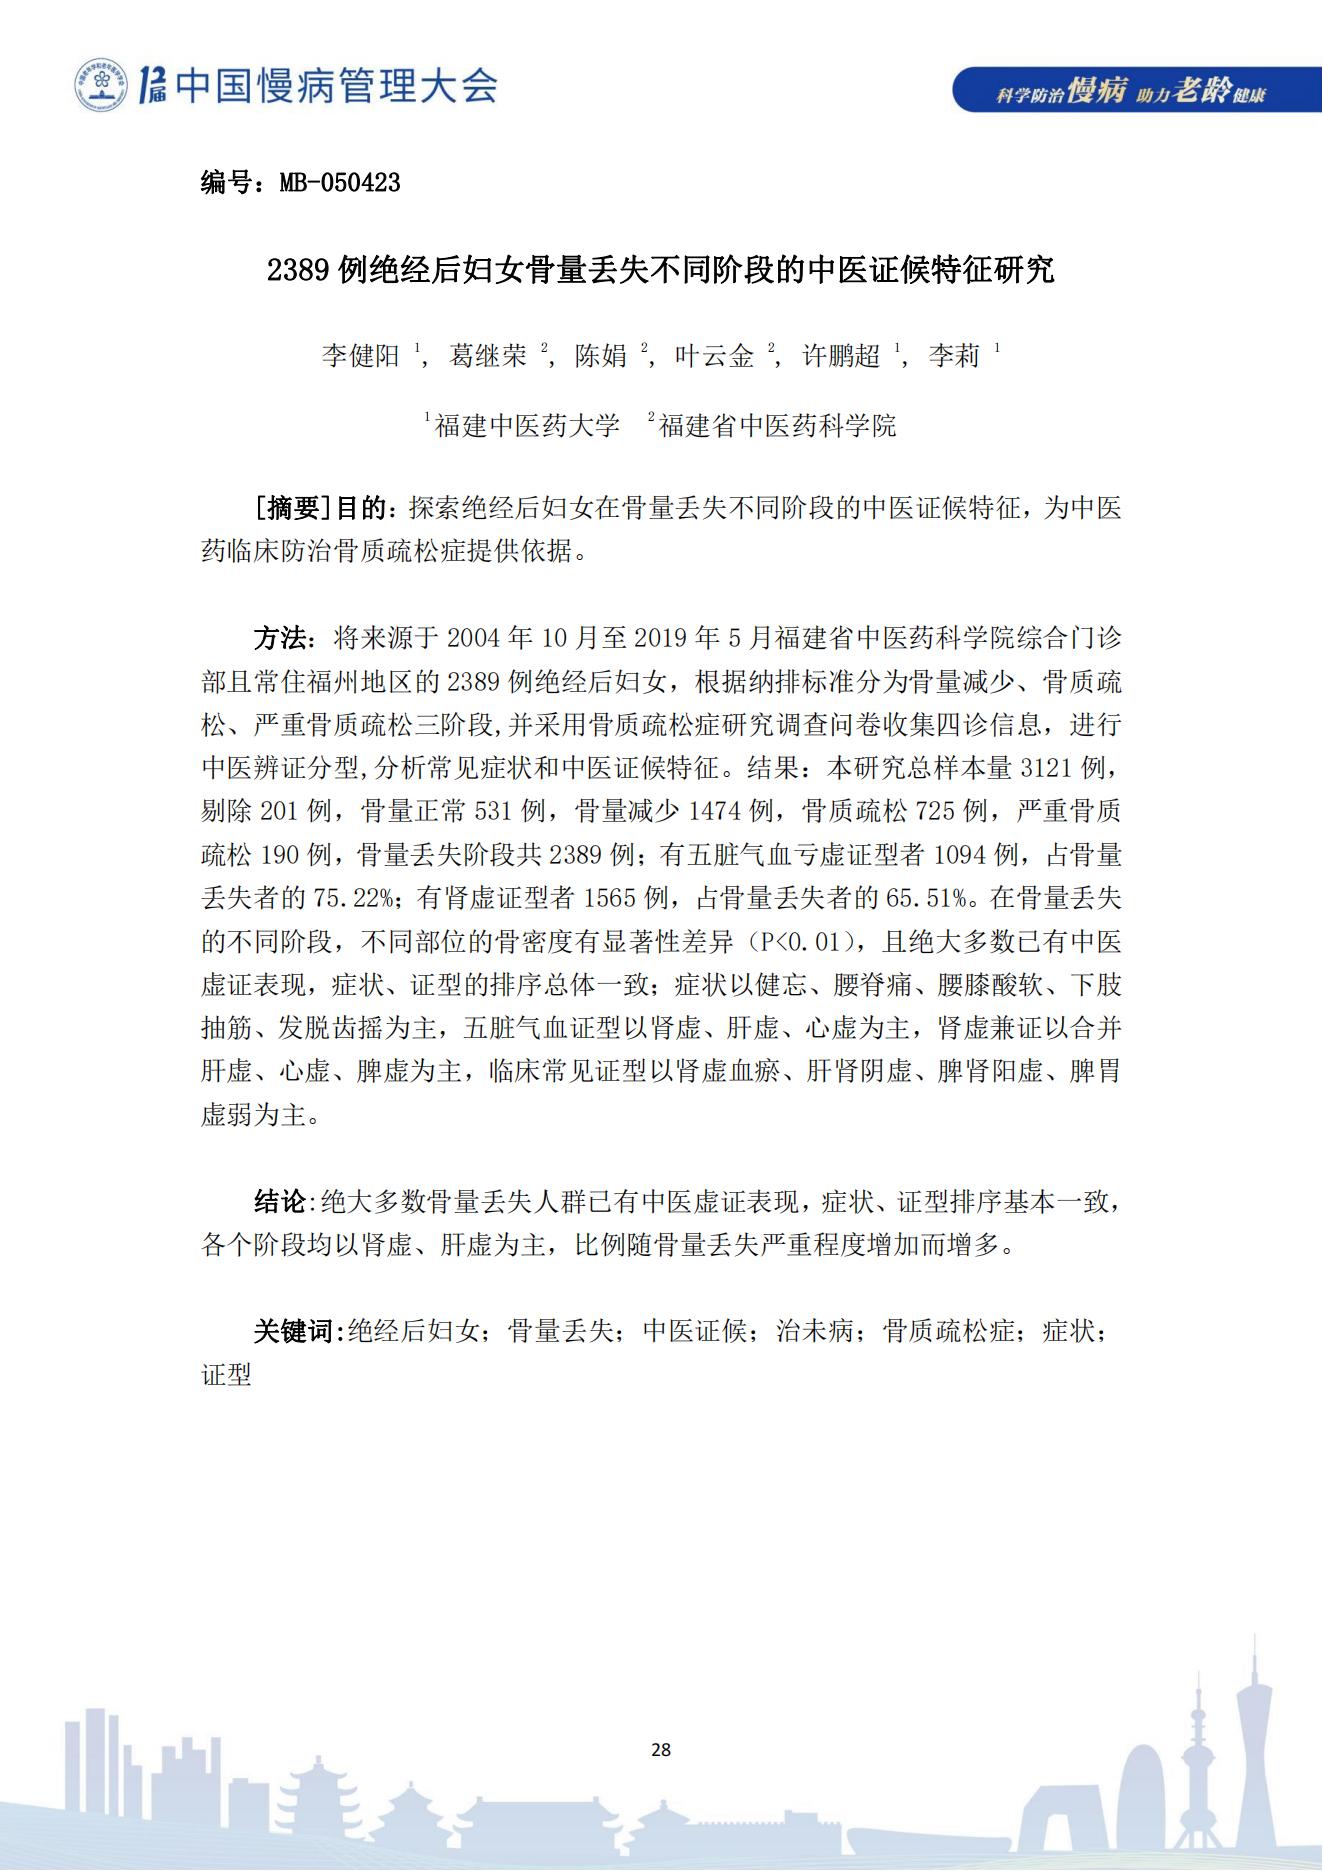 第十二届中国慢病管理大会获奖论文（电子版）0823_28.jpg